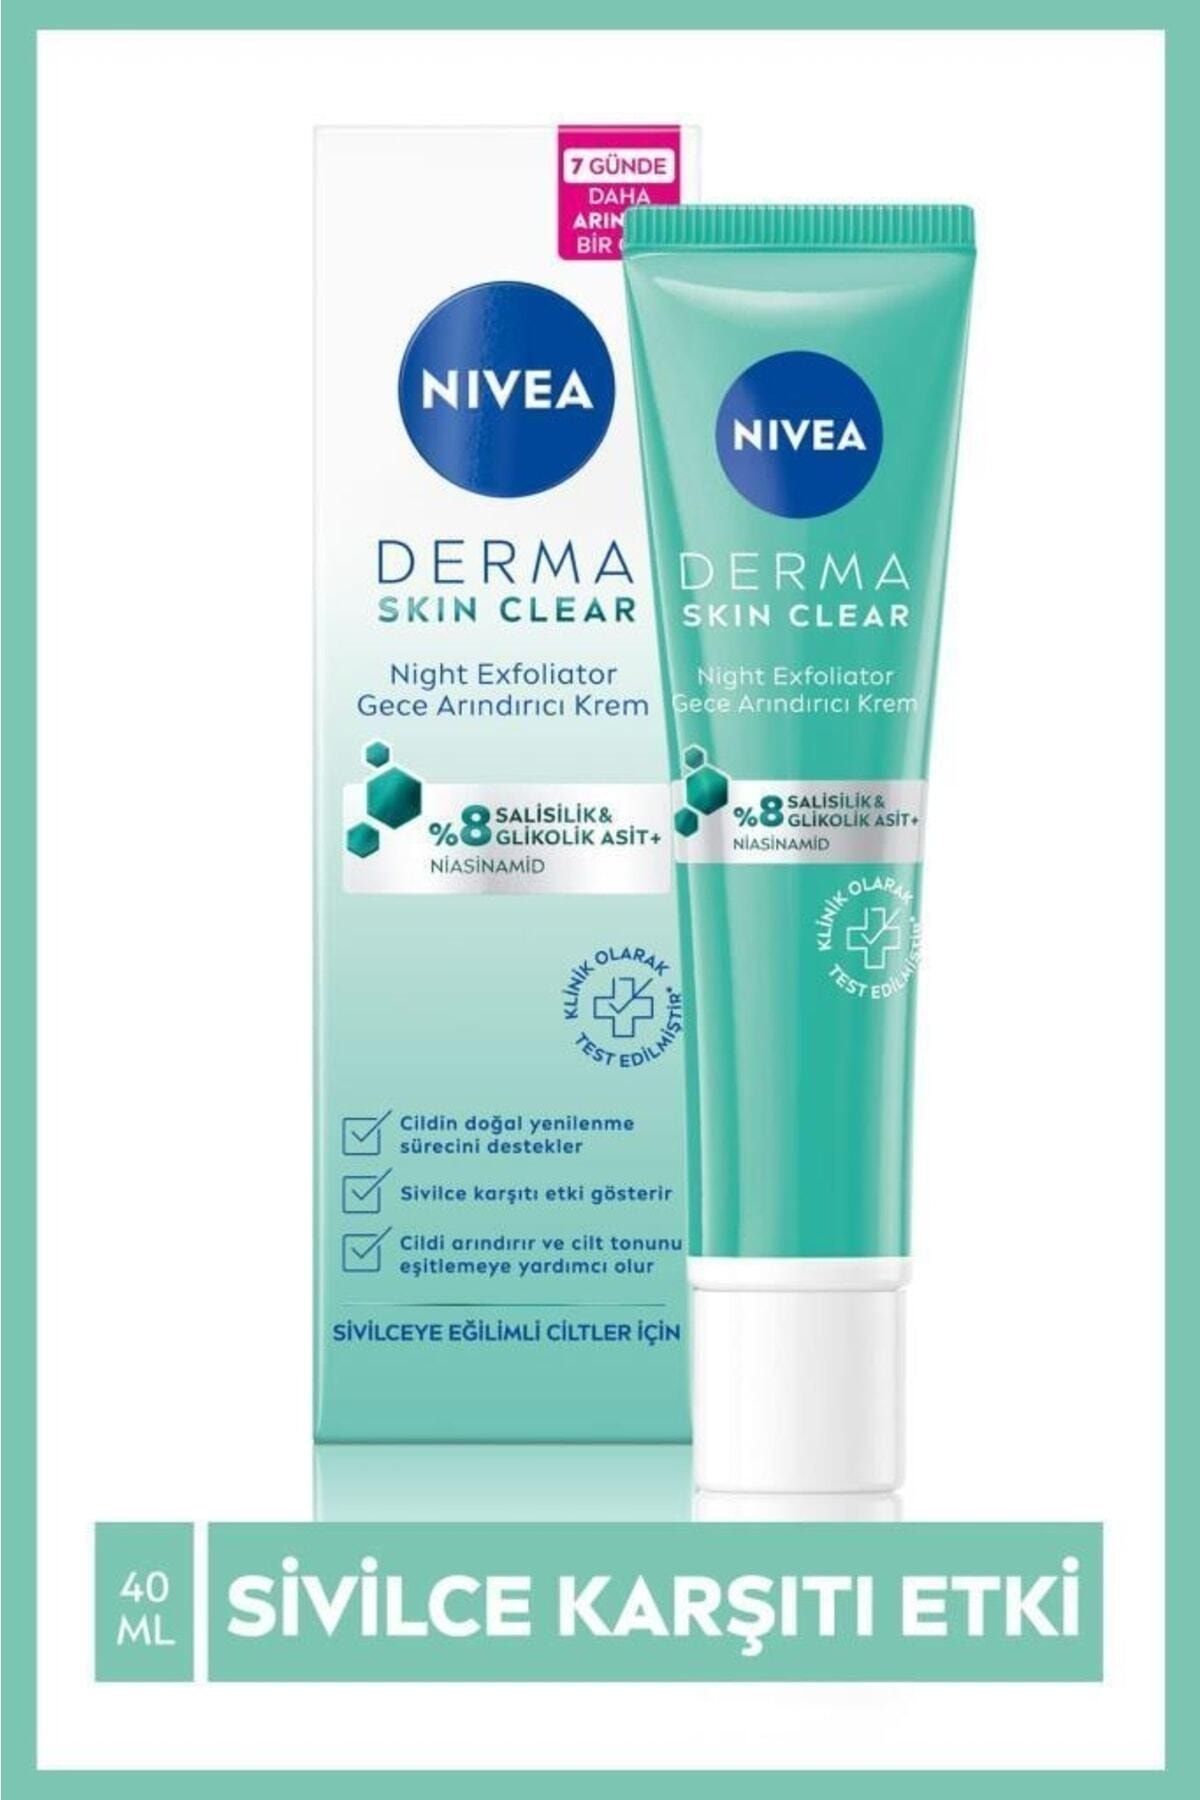 NIVEA Derma Skin Clear Night Exfoliator Sivilce Karşıtı Gece Arındırıcı Krem__40ml.(aha) Ve Salisilik Asit